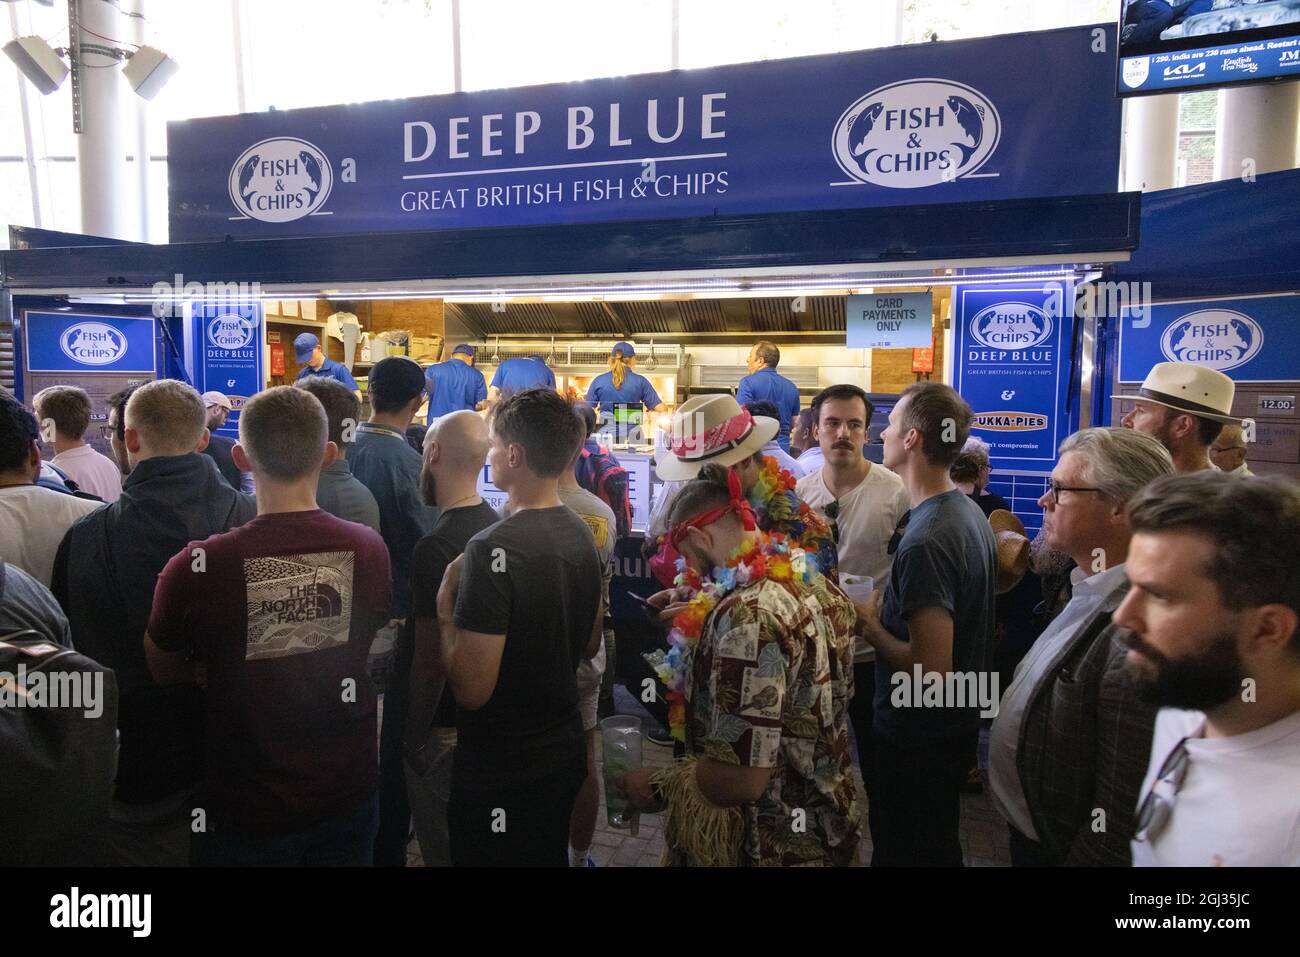 Deep Blue Fish & Chips Stand im Oval, Kennington London, serviert Fisch und Chips für eine Menschenmenge, London, Großbritannien Stockfoto